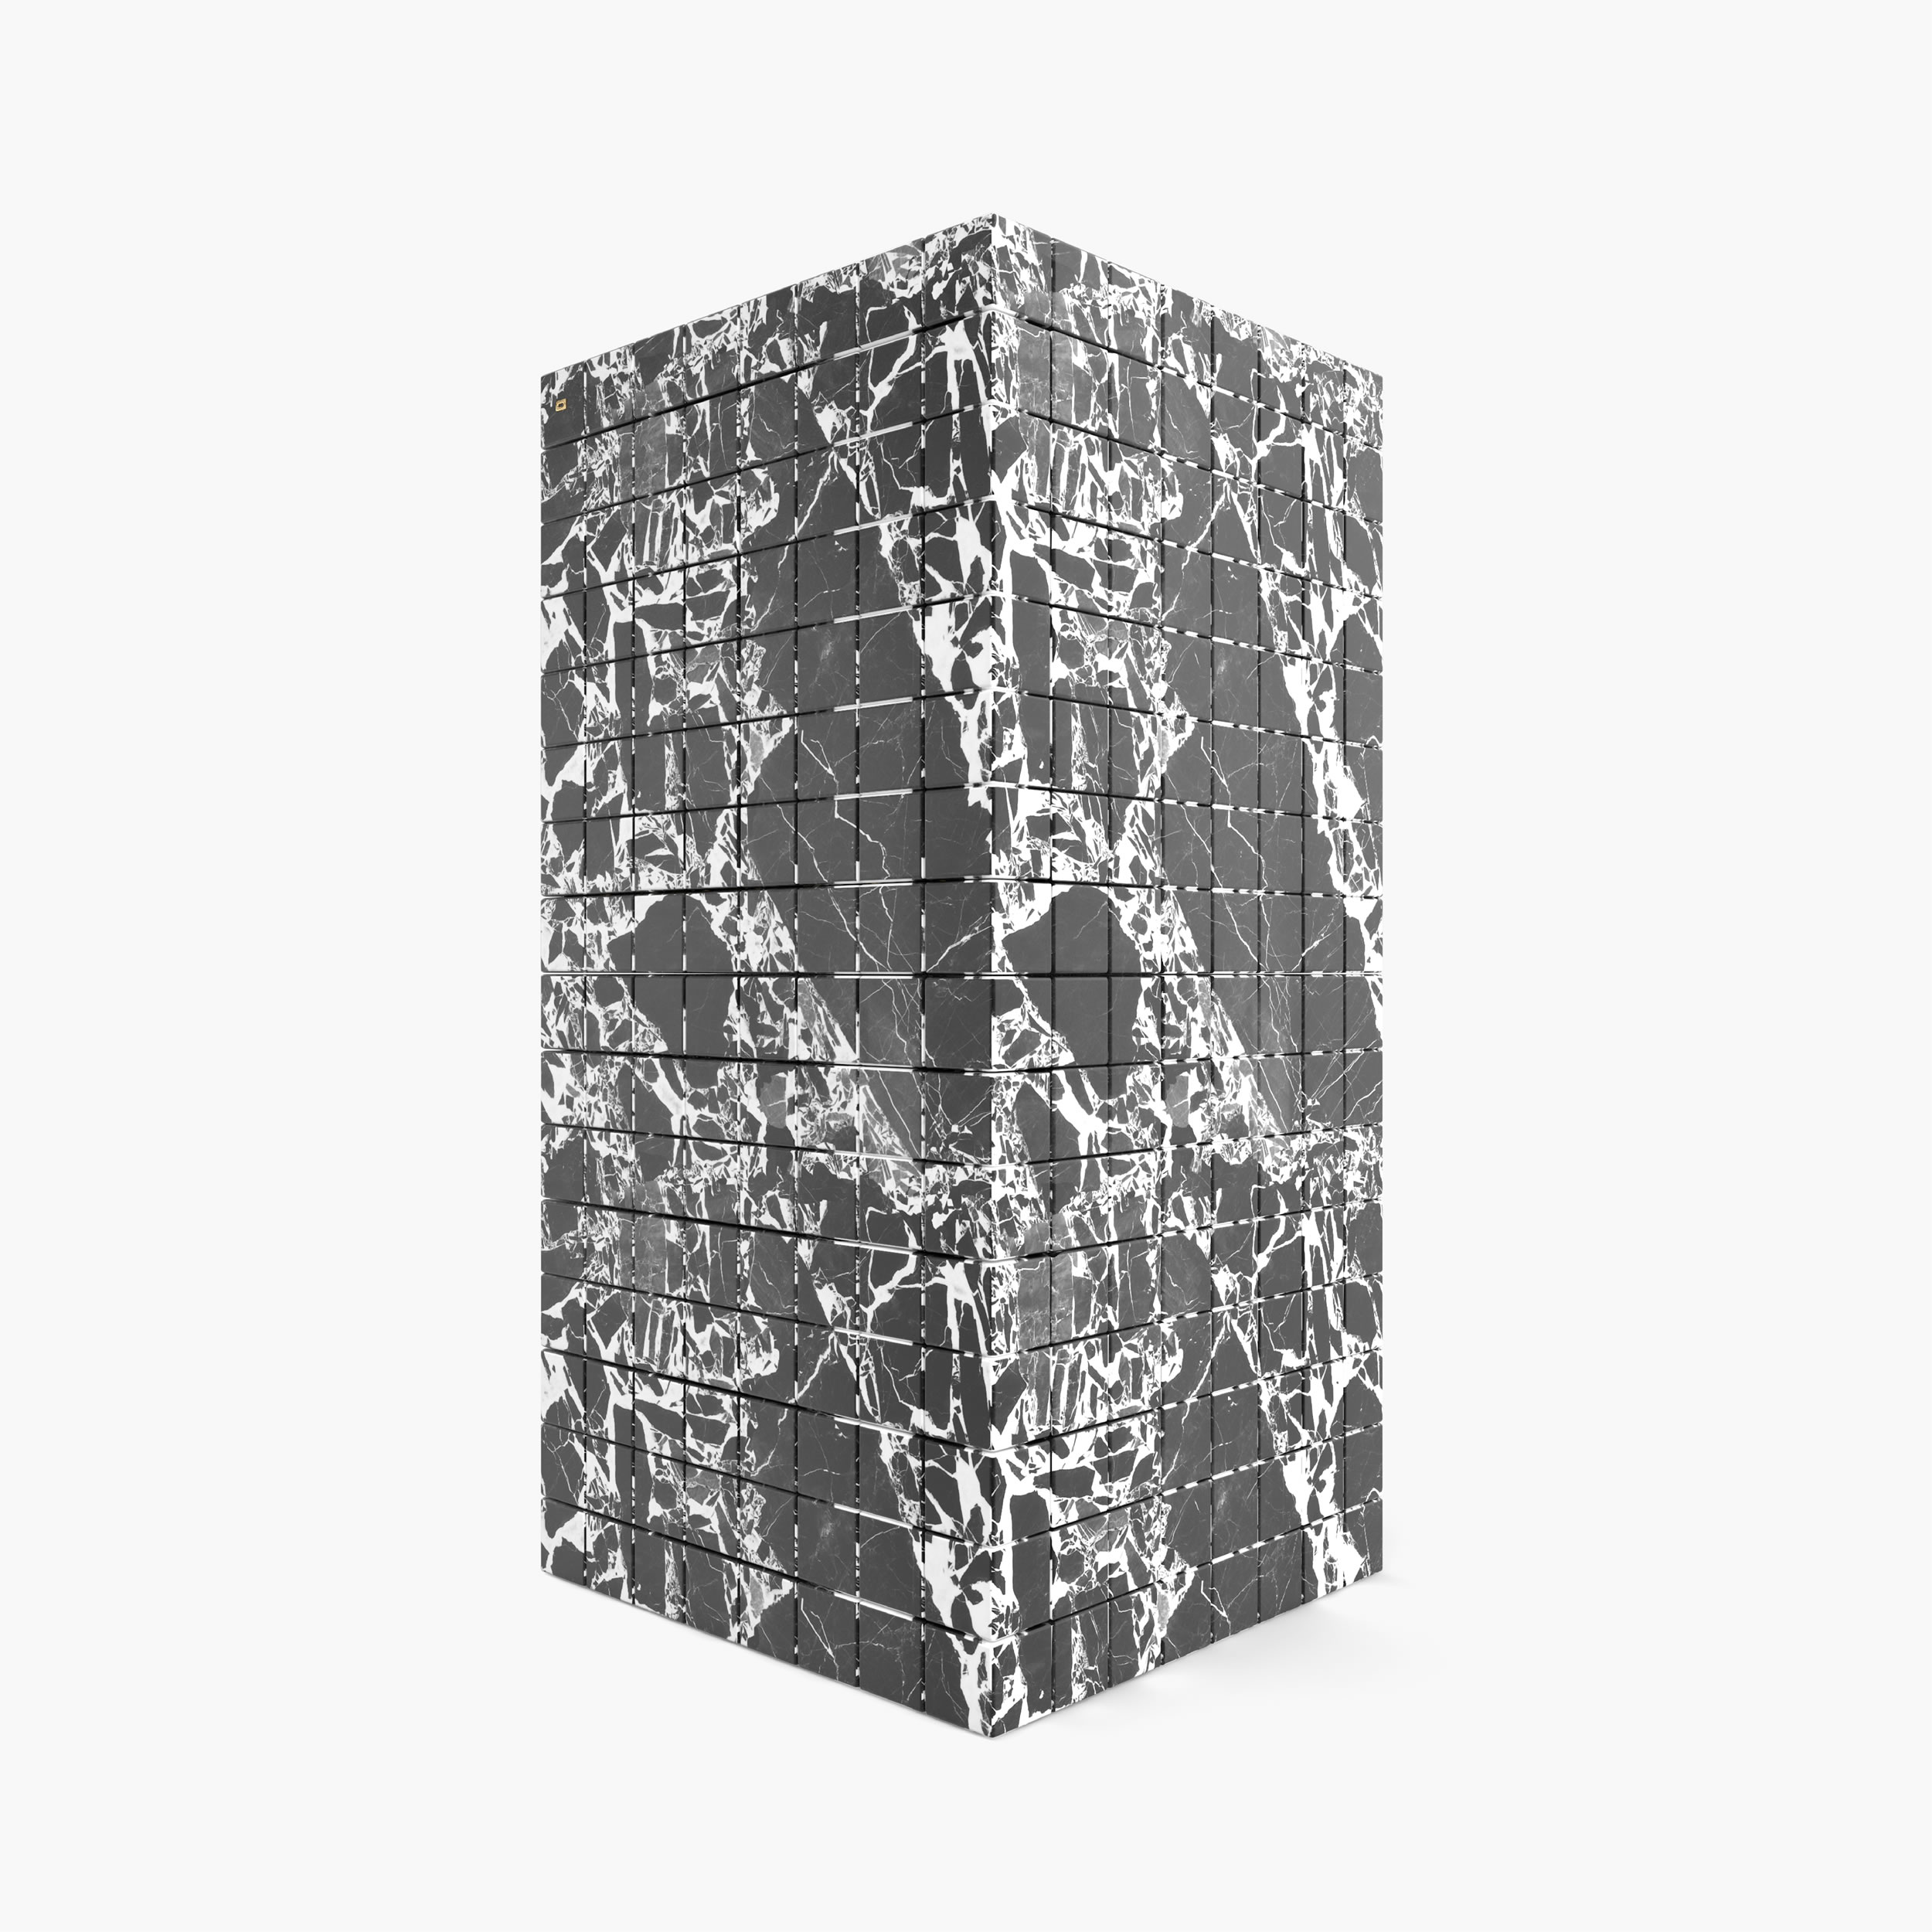 Schrank aus Kuben Weiss Grand Antique Marmor limitierte Auflage beschraenkte Auflage Wohnzimmer Kreation Schraenke FS 148 FELIX SCHWAKE